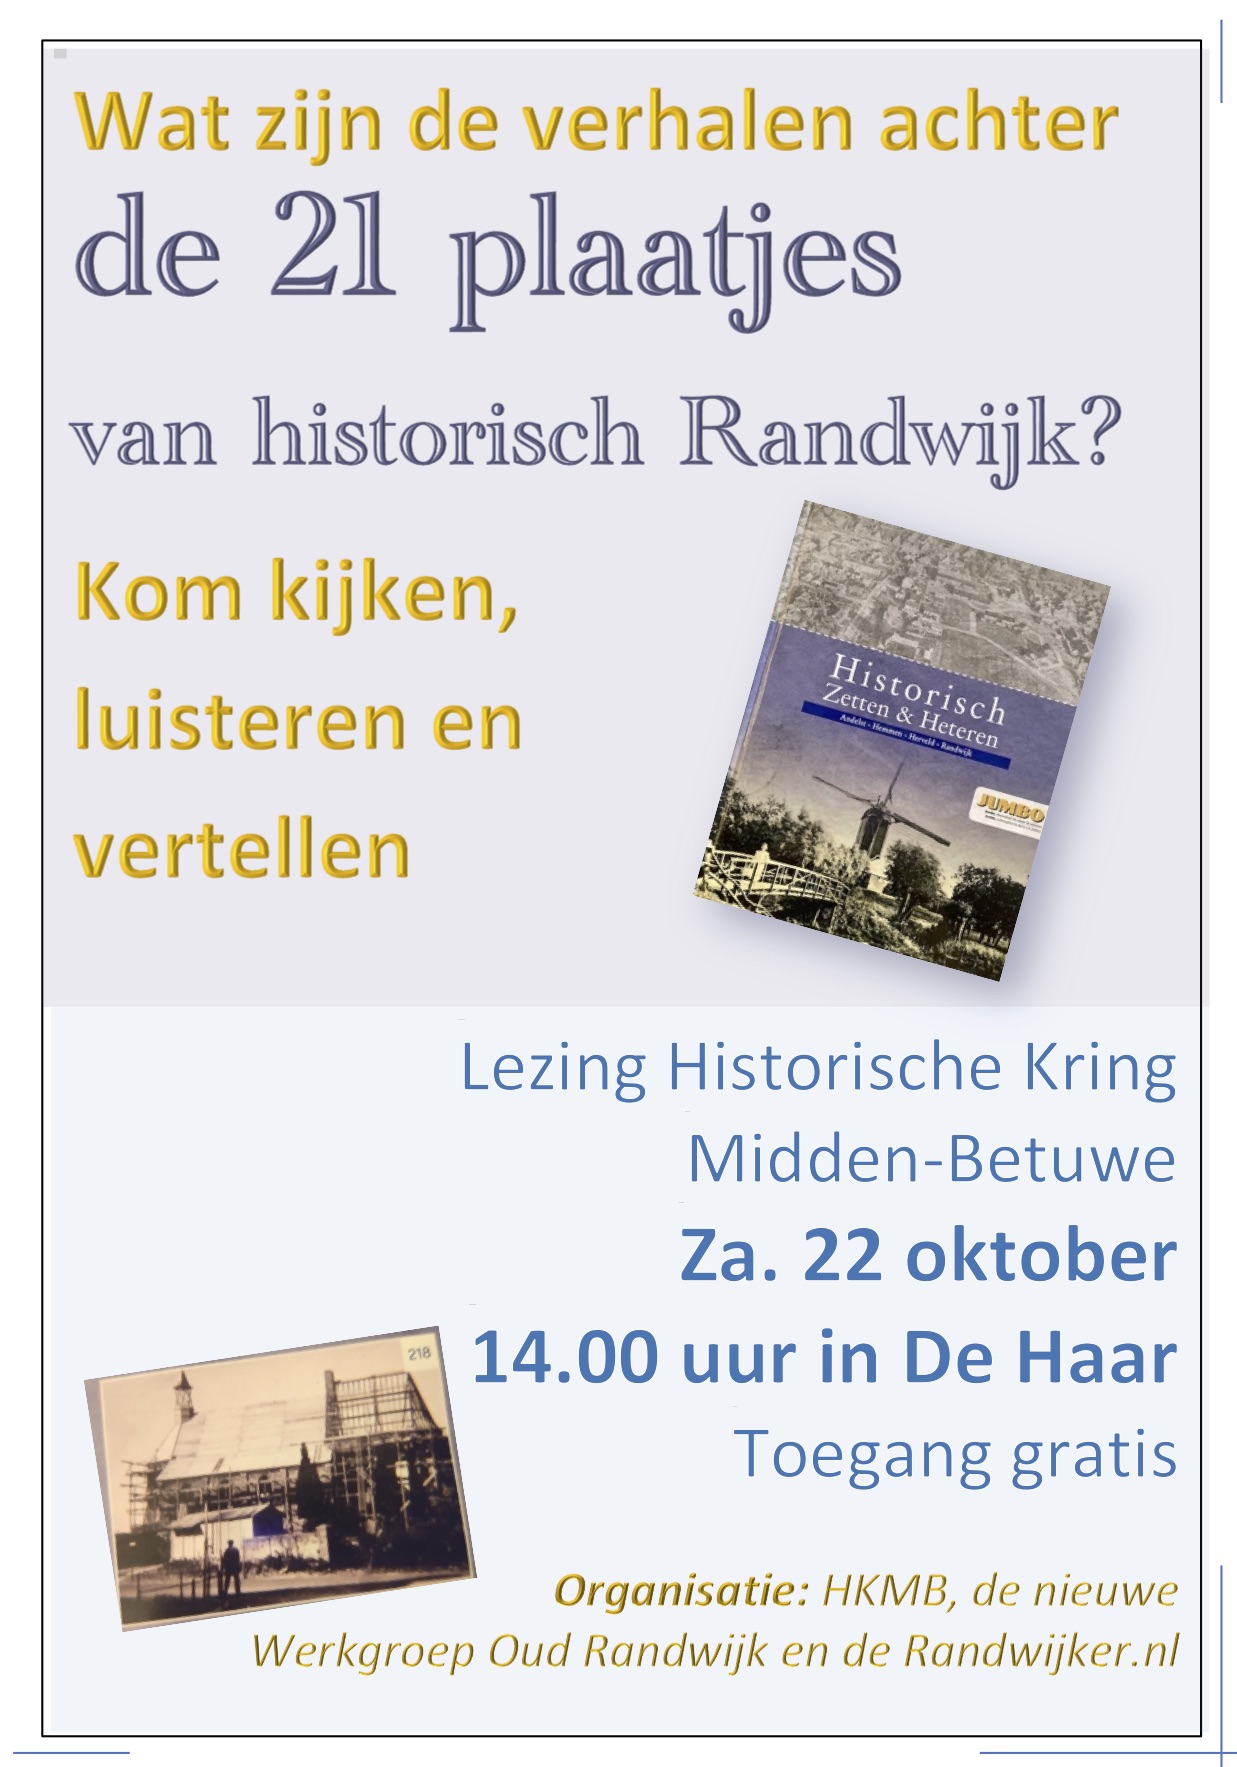 Lezing: de 21 plaatjes van historisch Randwijk